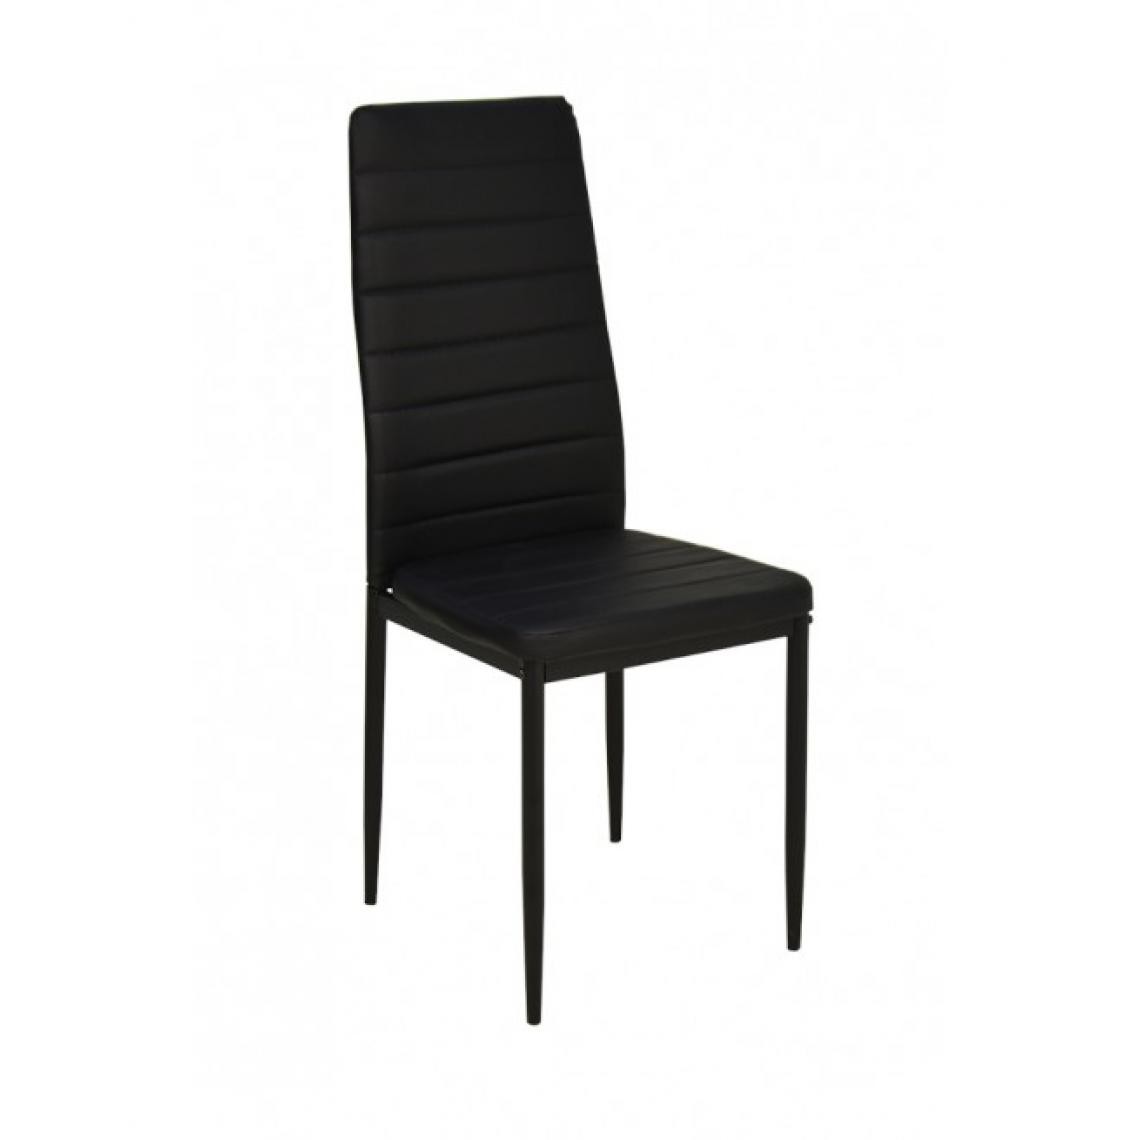 Hucoco - VELA - Chaise rembourrée style moderne salle à manger - 40x40x98 cm - Cadre en métal - Noir - Chaises